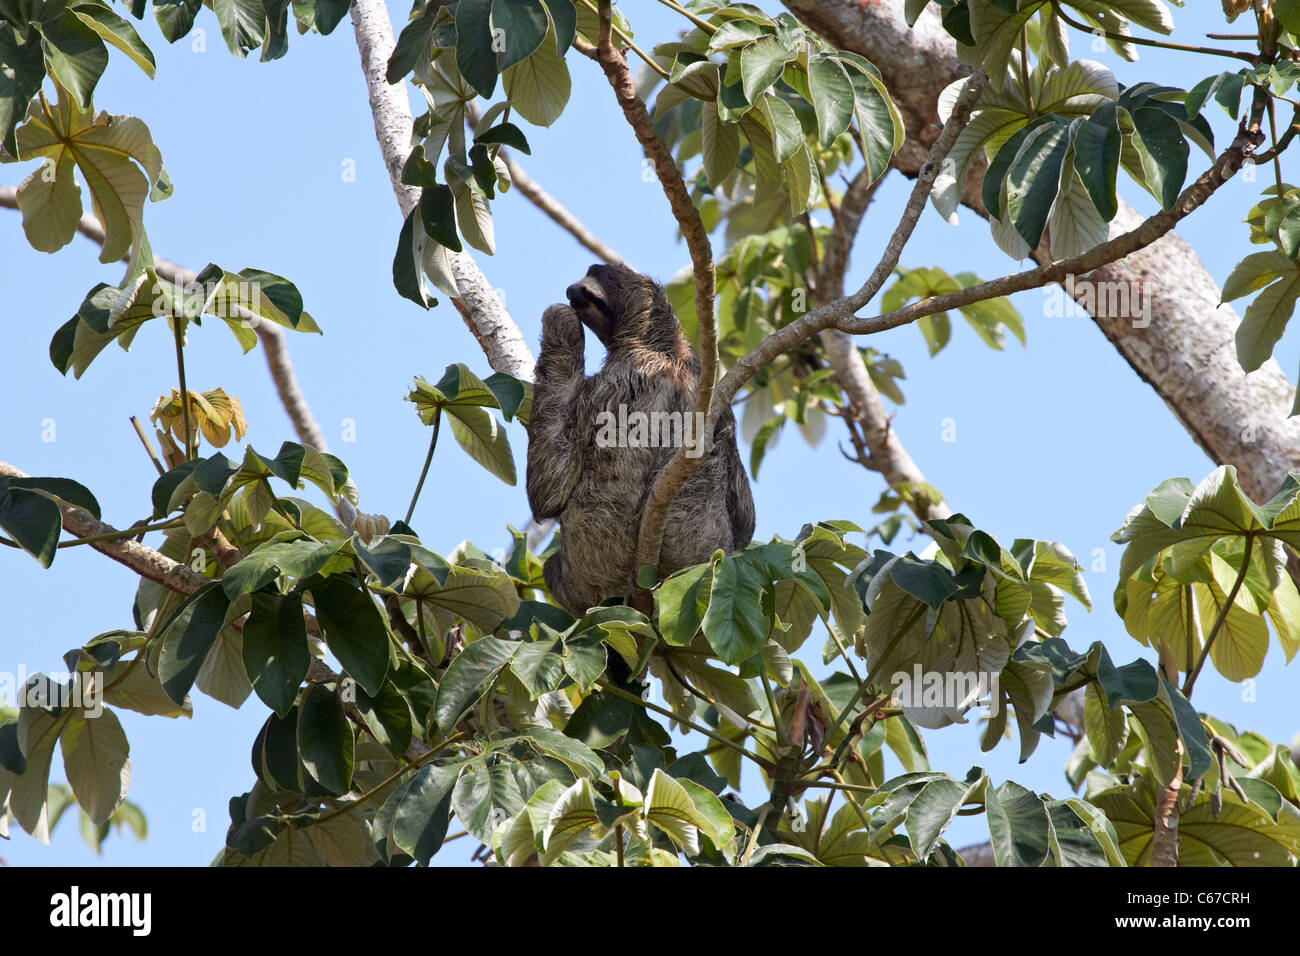 Three toed Sloth in tree Stock Photo